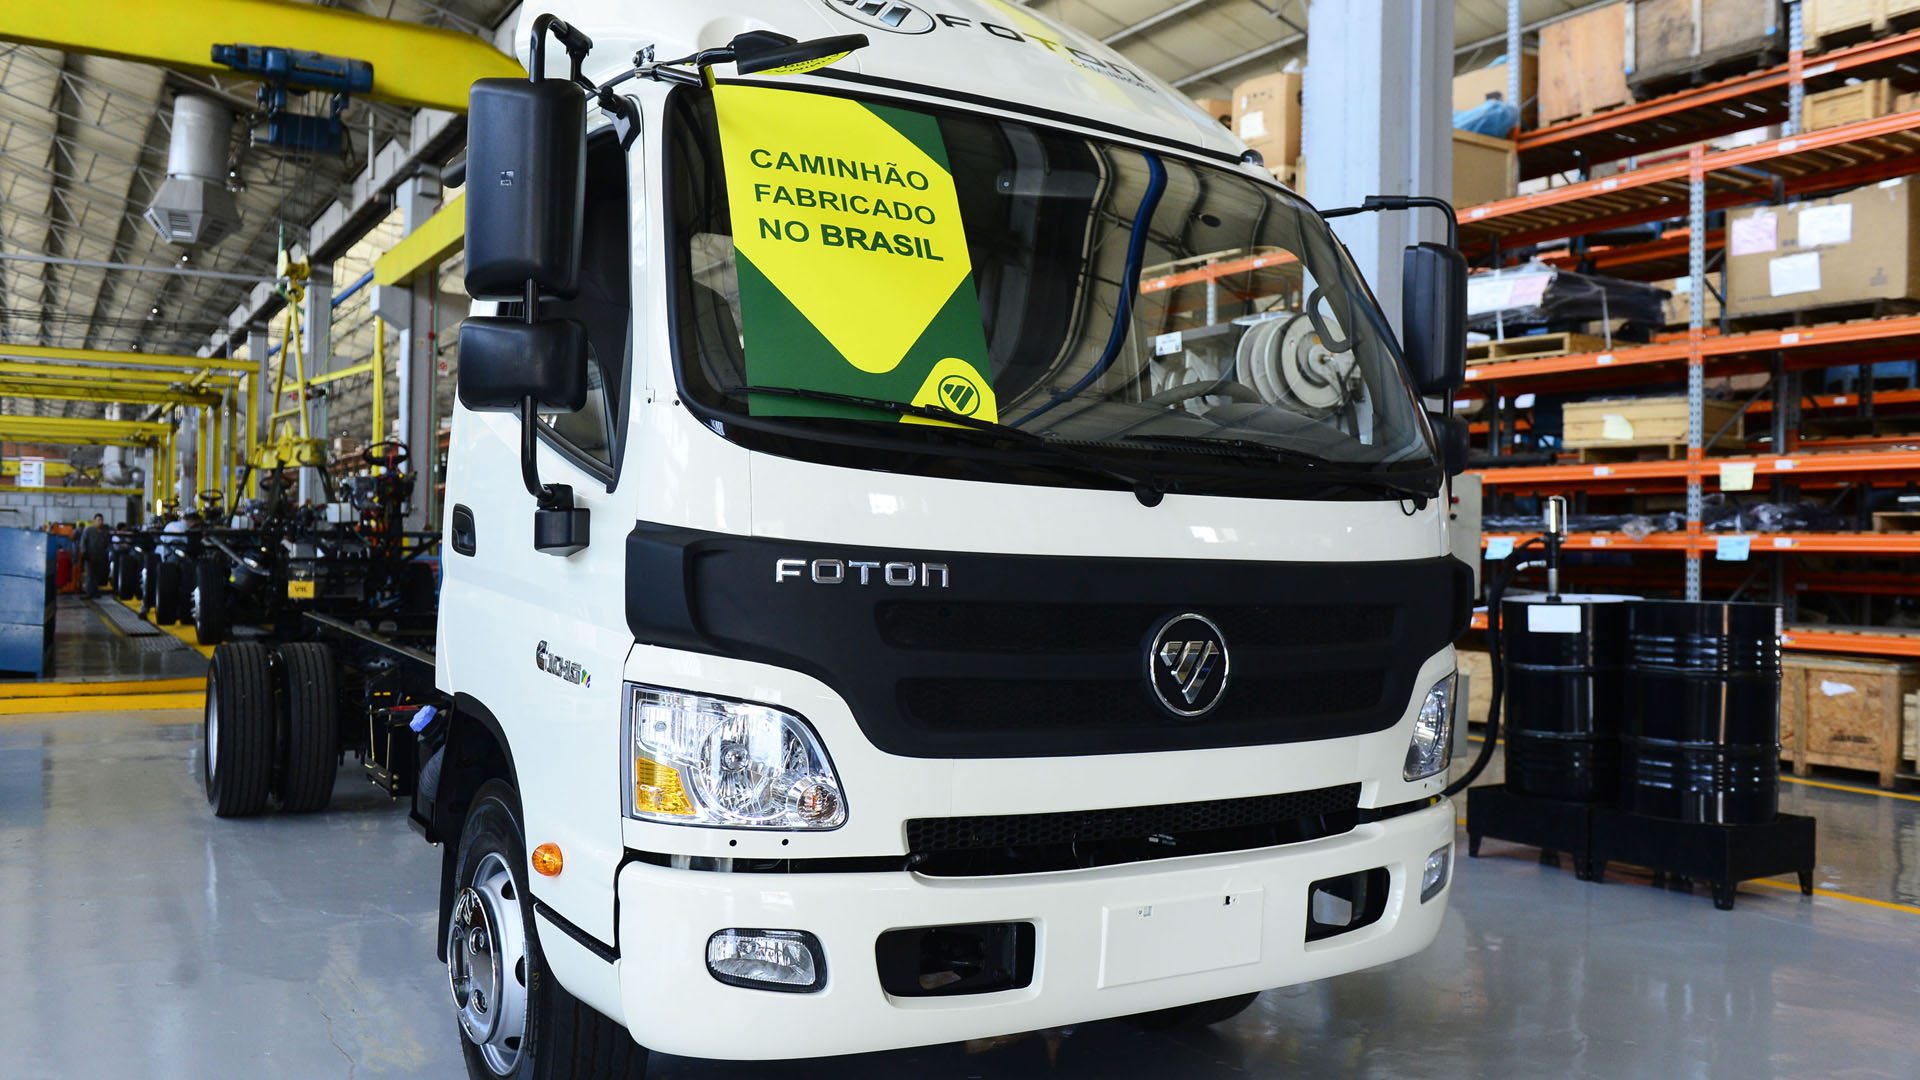 Foton Caminhões - veículos da marca fabricados no Brasil começam a ser comercializados.